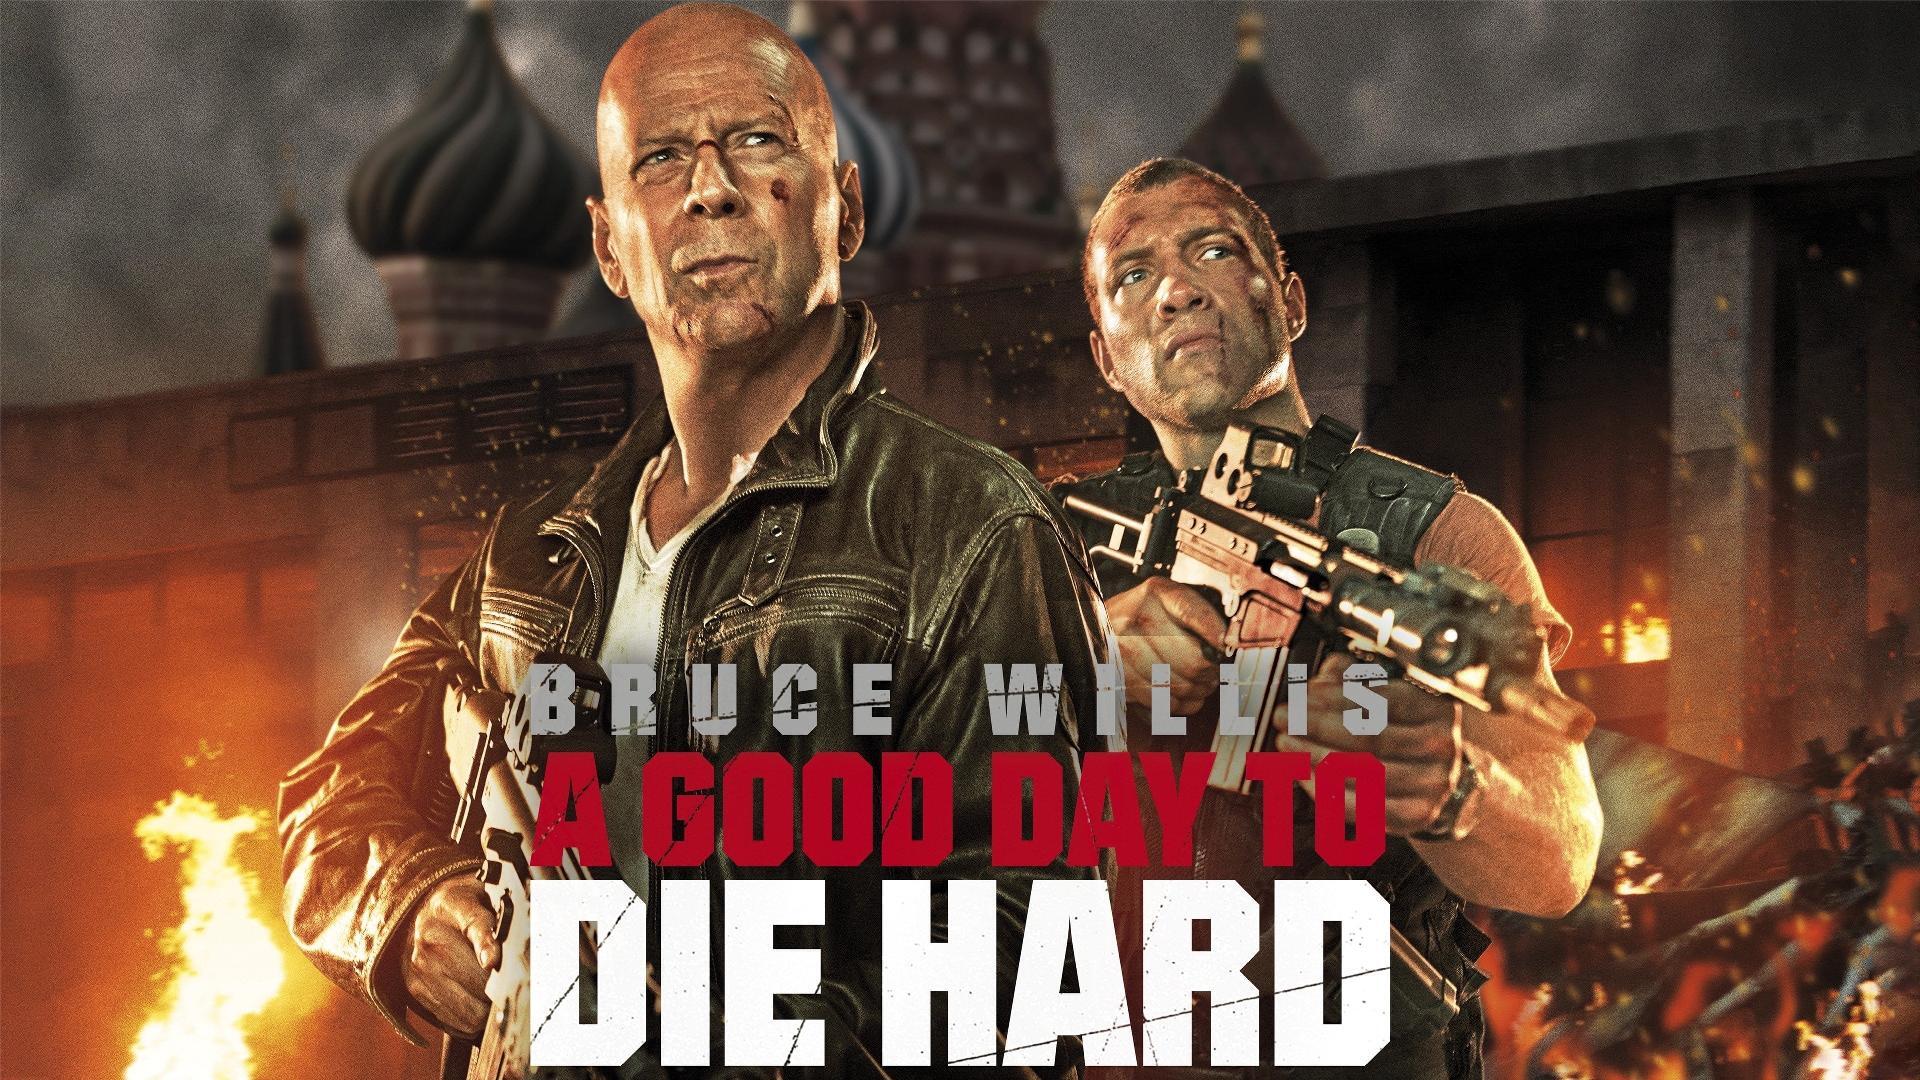 კერკეტი კაკალი 5: კარგი დღე სიკვდილისთვის / A Good Day to Die Hard